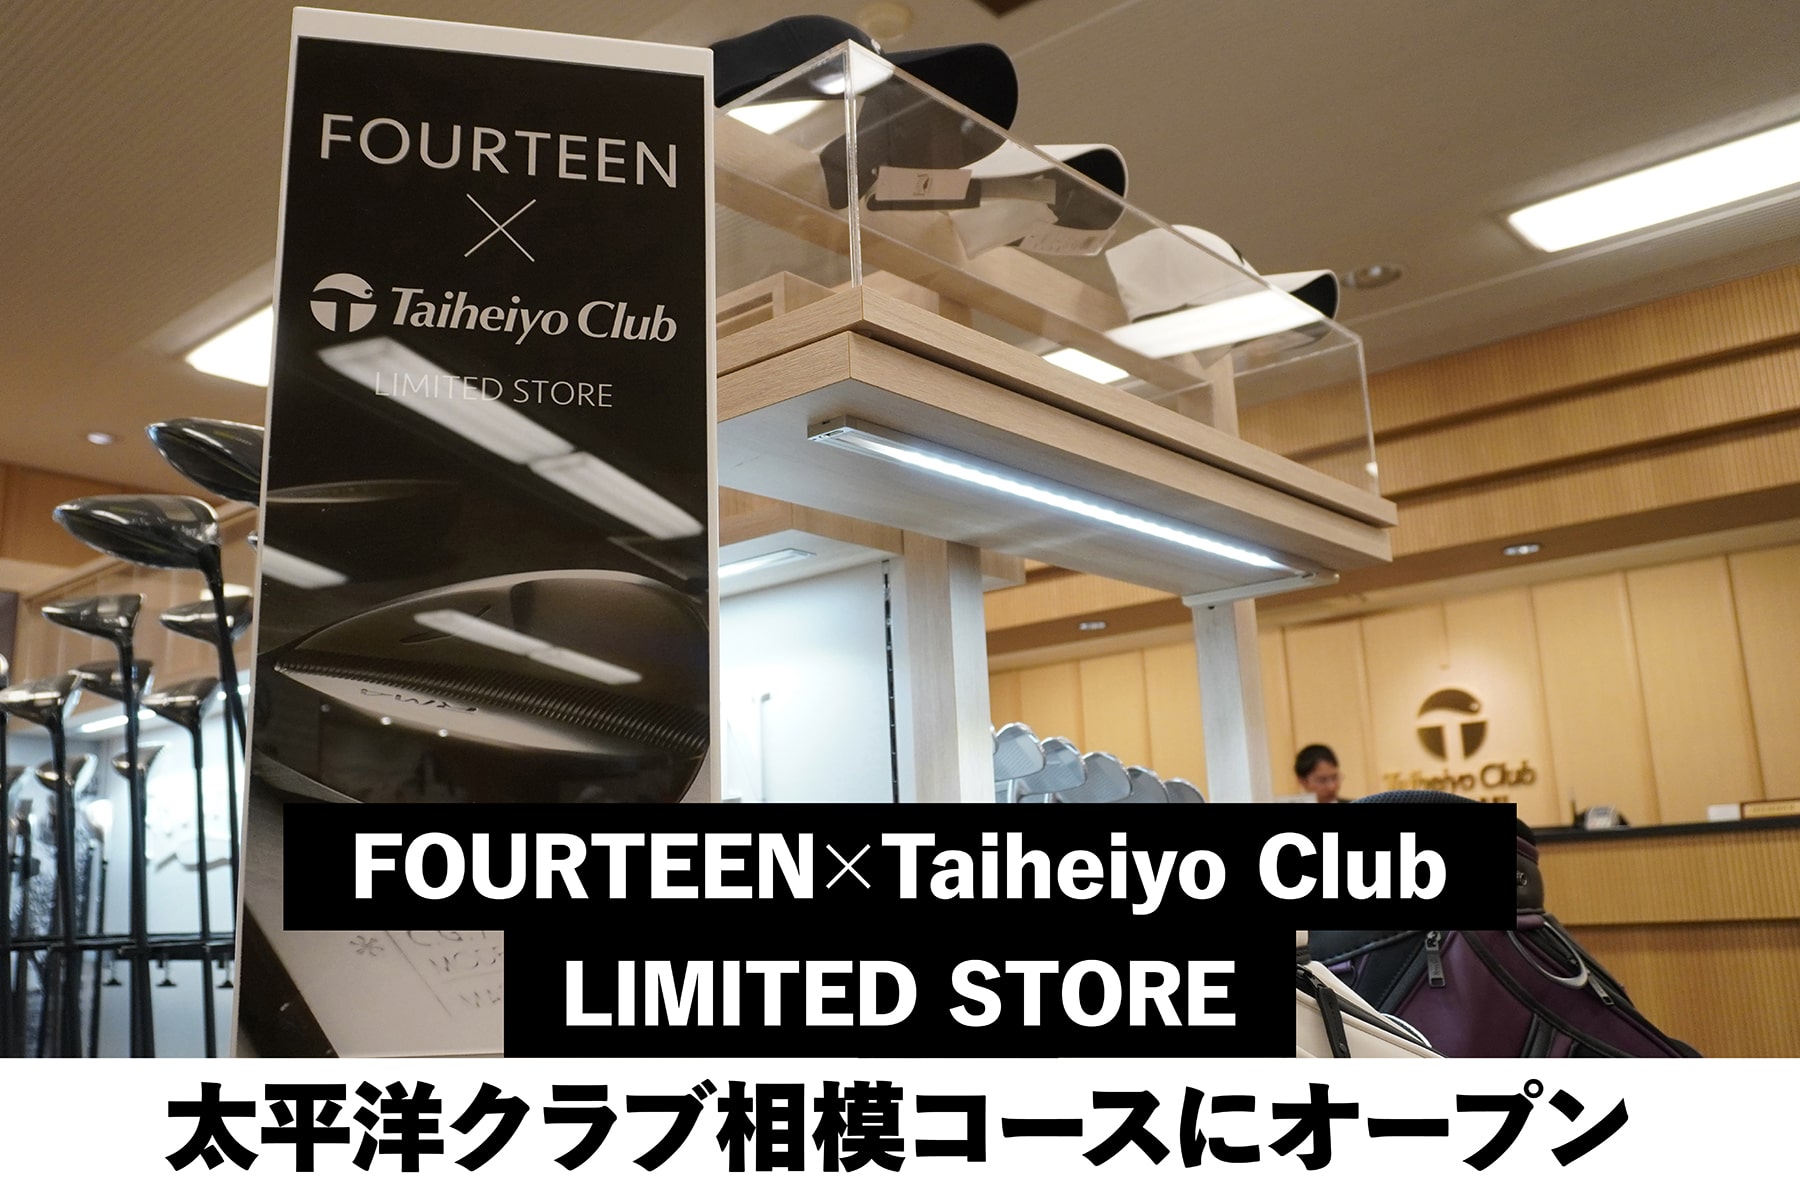 FOURTEEN×Taiheiyo Club
LIMITED STORE
太平洋クラブ相模コースにオープン